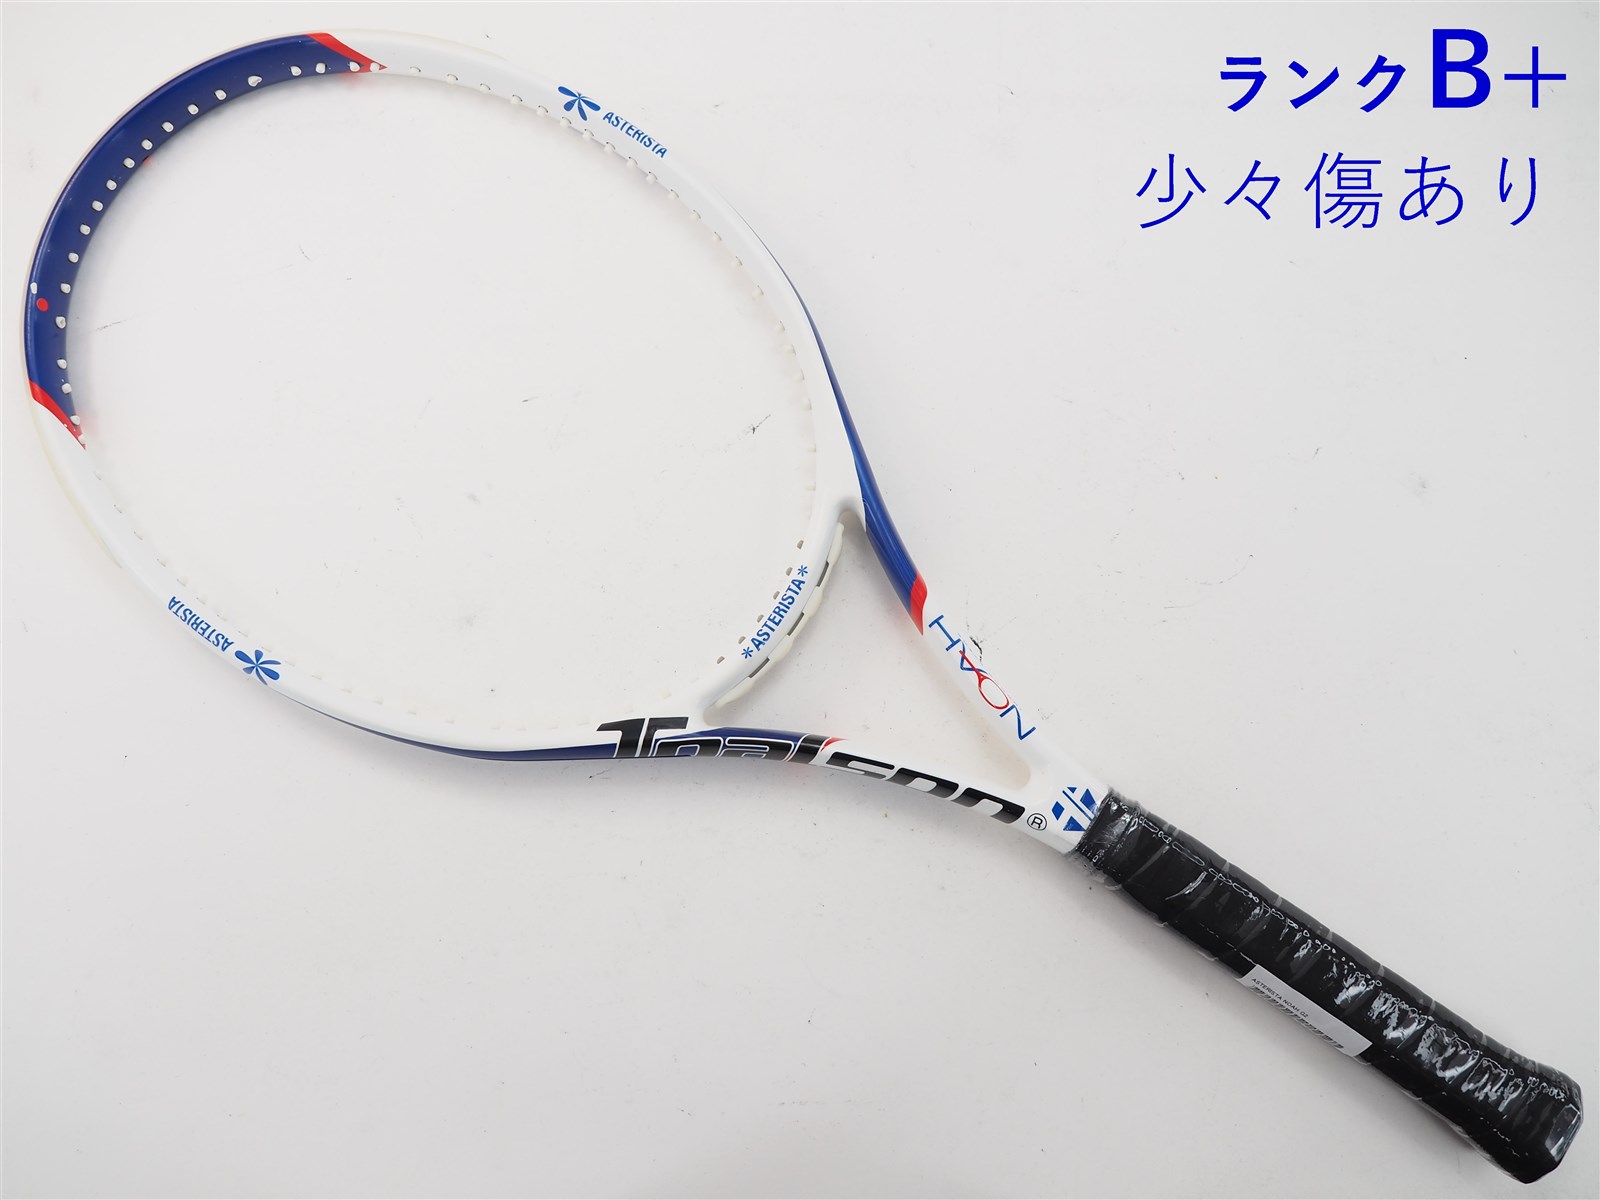 テニスラケット トアルソン アスタリスタ 23【キッズ用ラケット】 (G0)TOALSON ASTERISTA 23